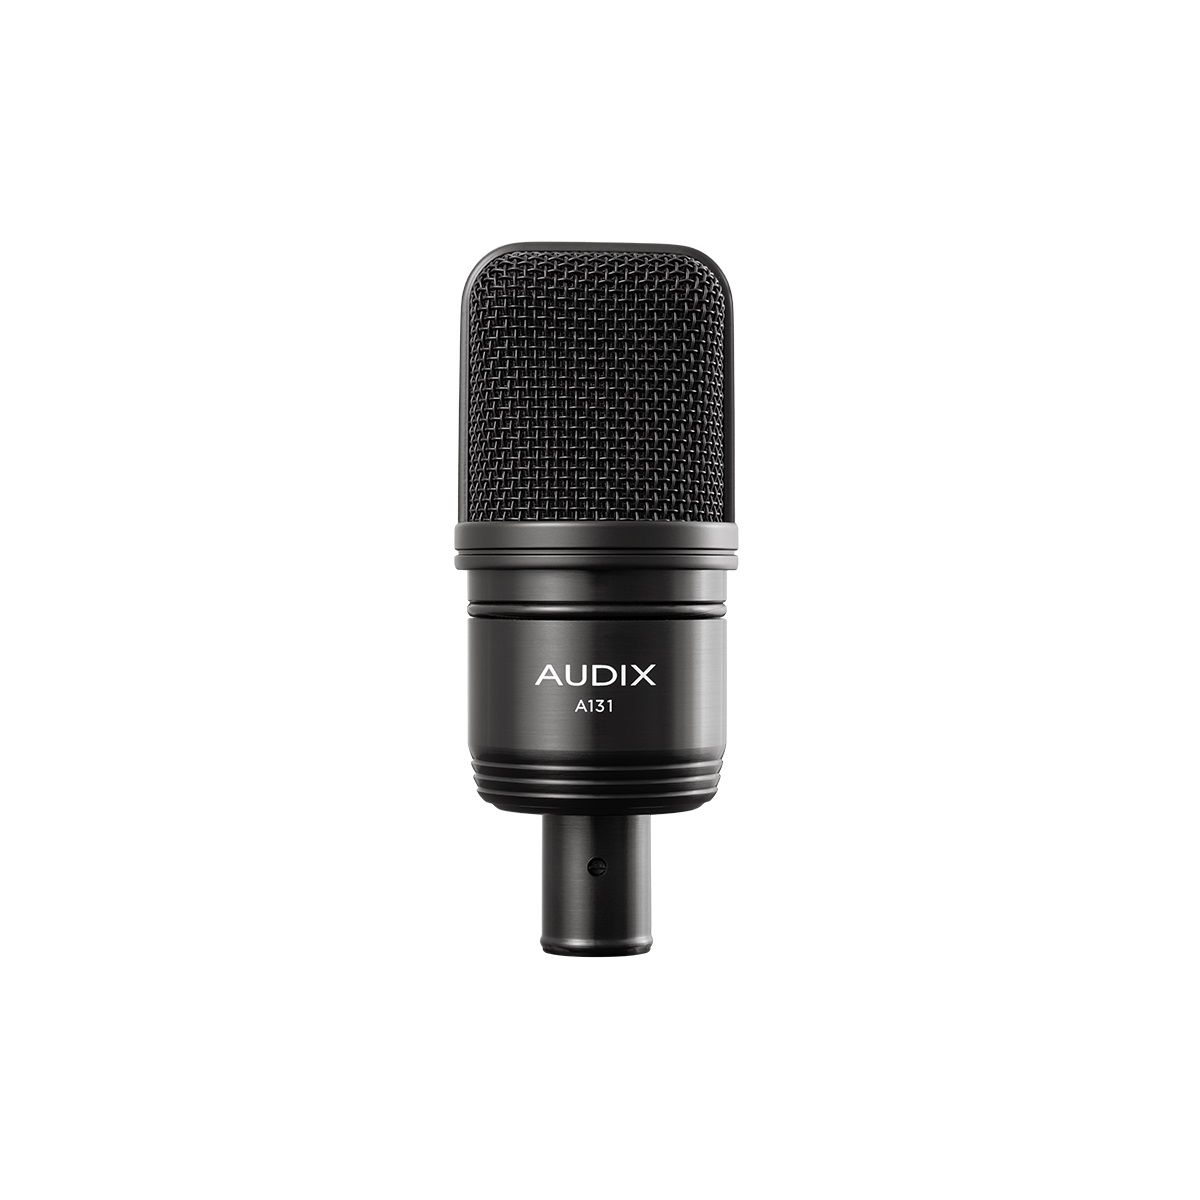 Студийные микрофоны AUDIX A131